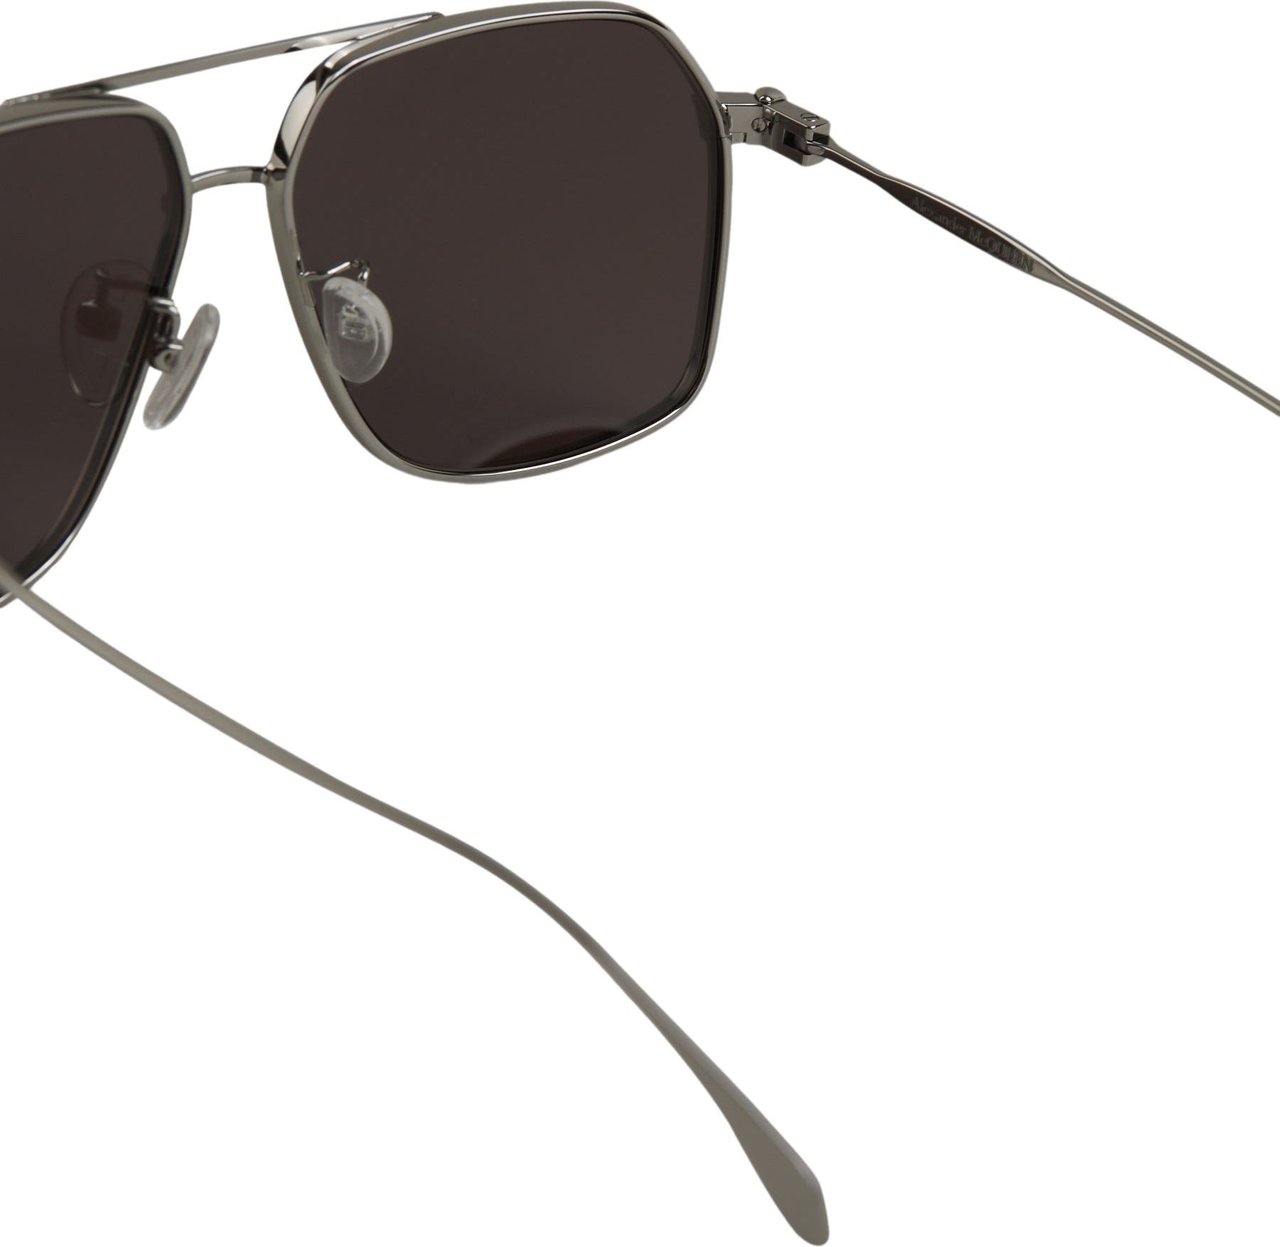 Alexander McQueen Metal Sunglasses Zilver